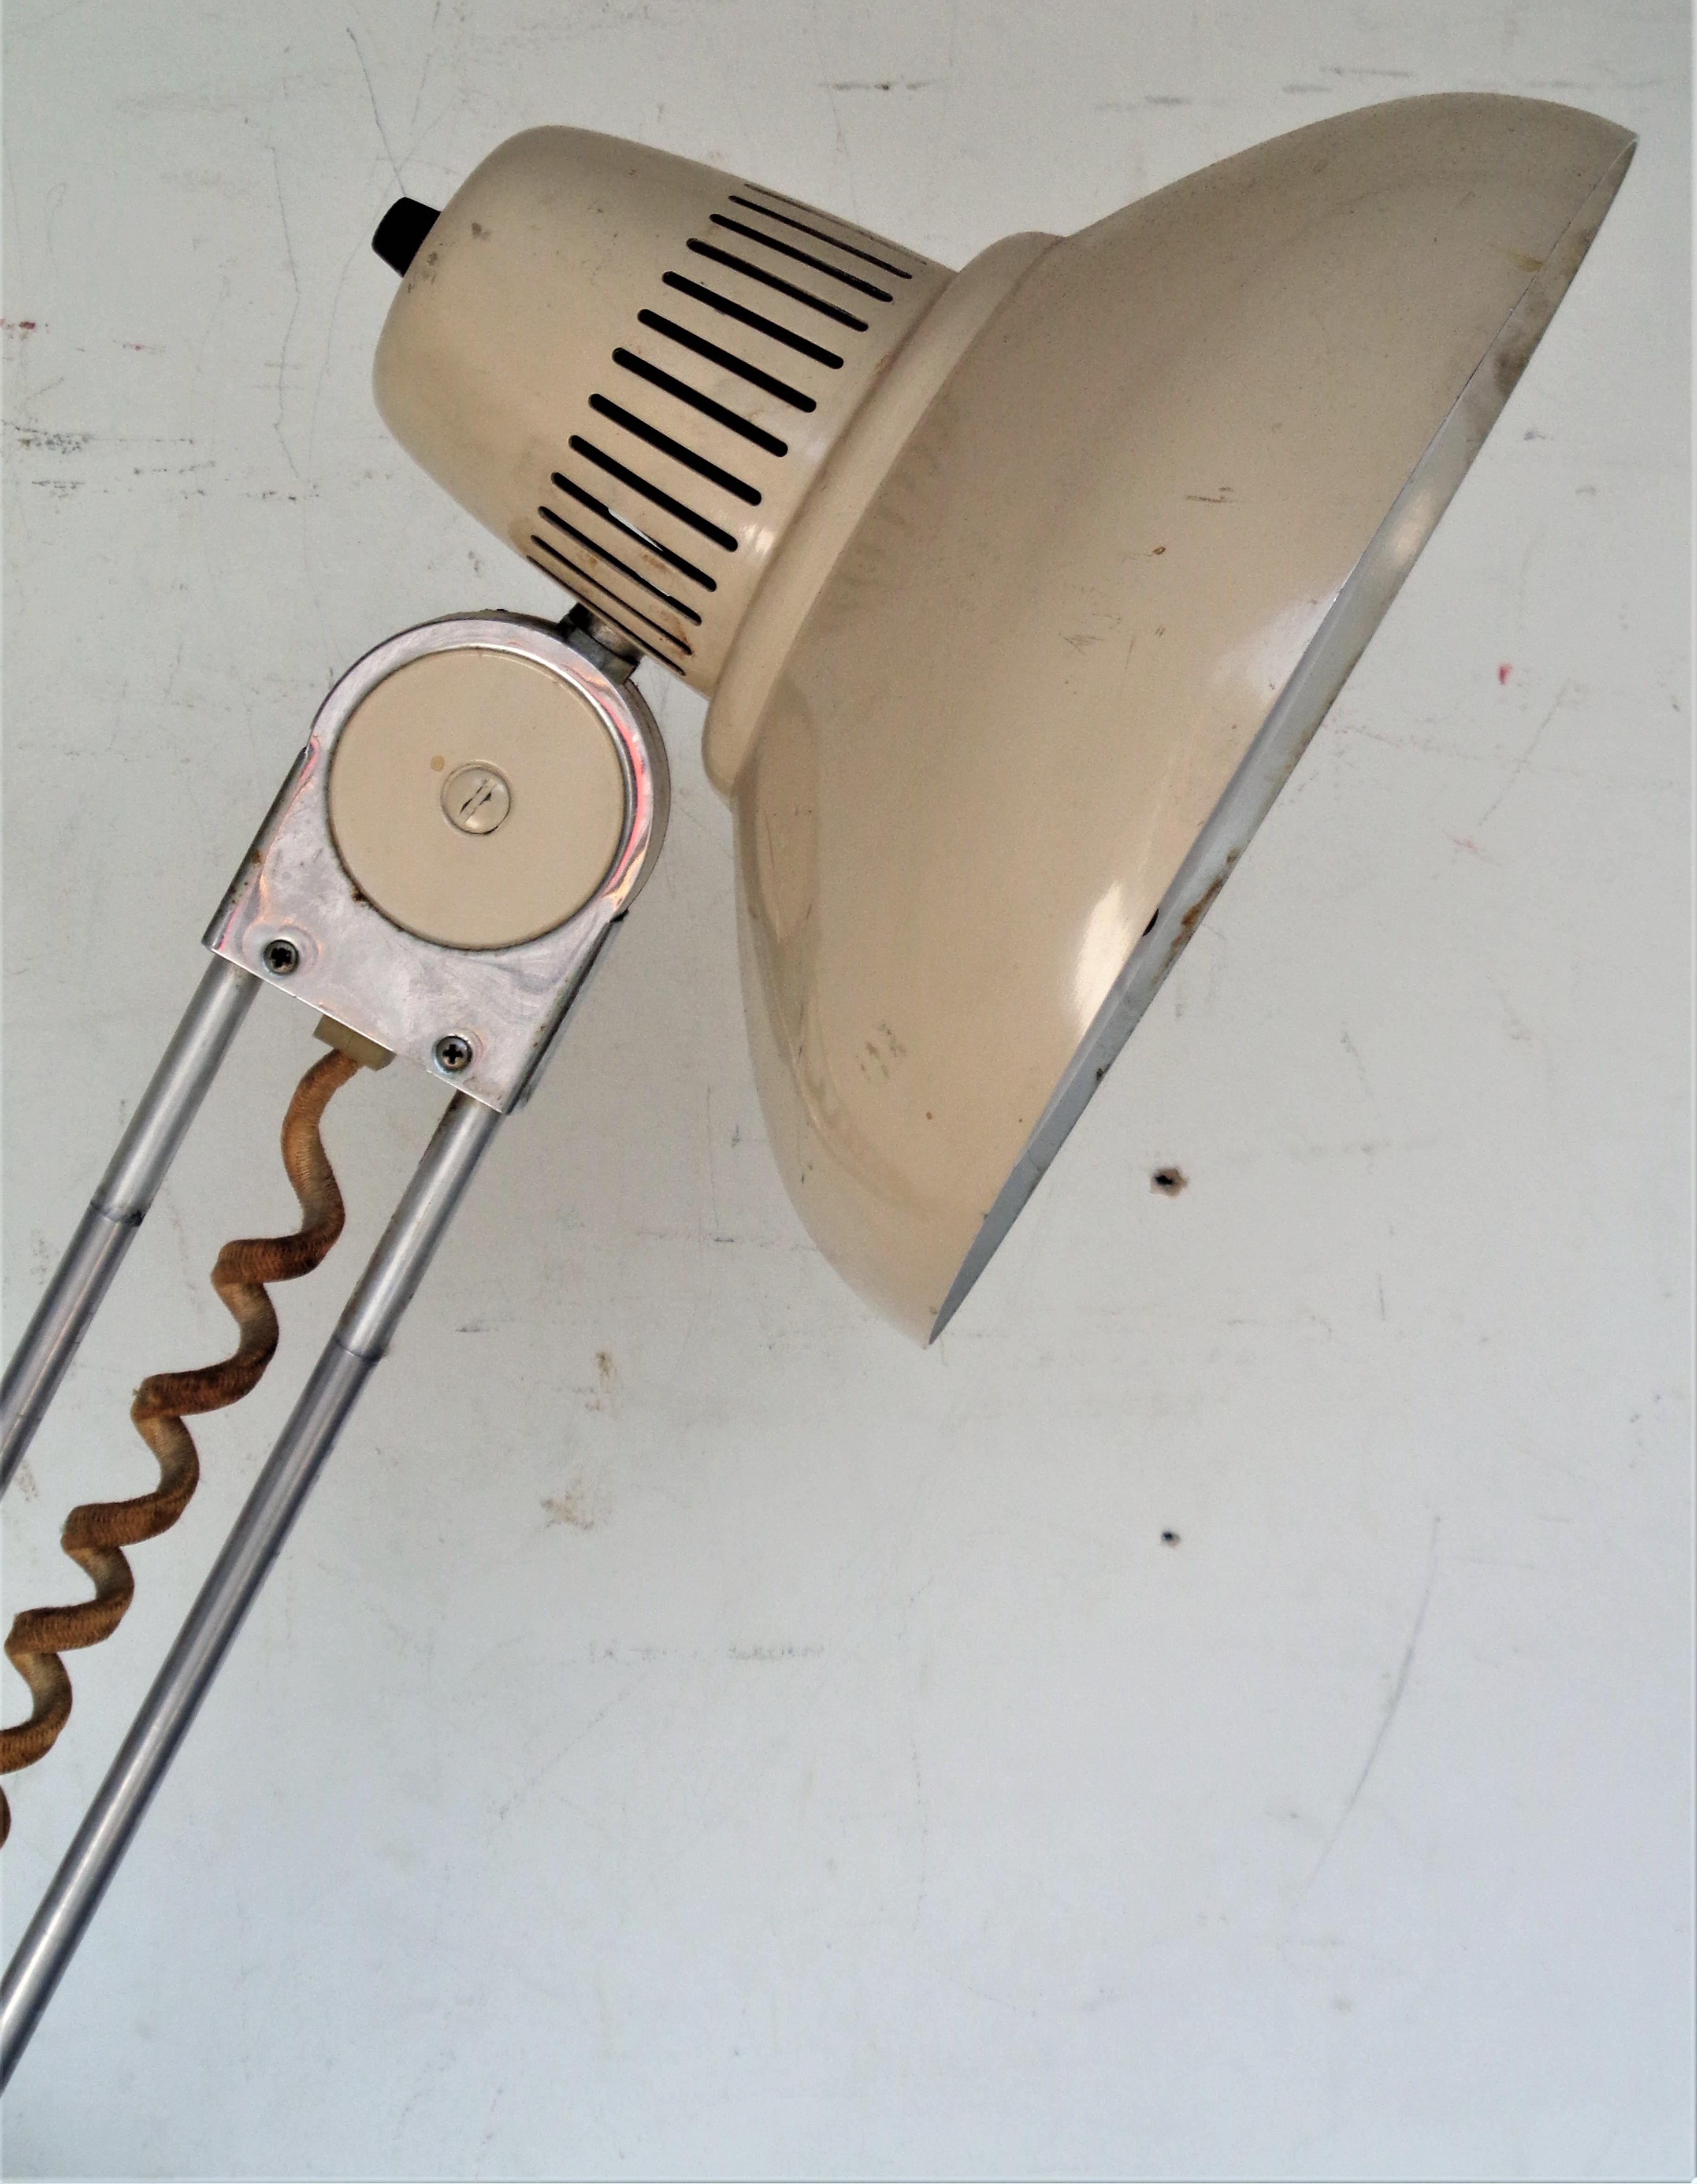 Lampe de table pivotante télescopique industrielle américaine en métal et aluminium avec une base de 8 pouces de diamètre qui est lestée de fer sur la partie inférieure et la finition d'usine originale en émail peint sur le métal. La hauteur